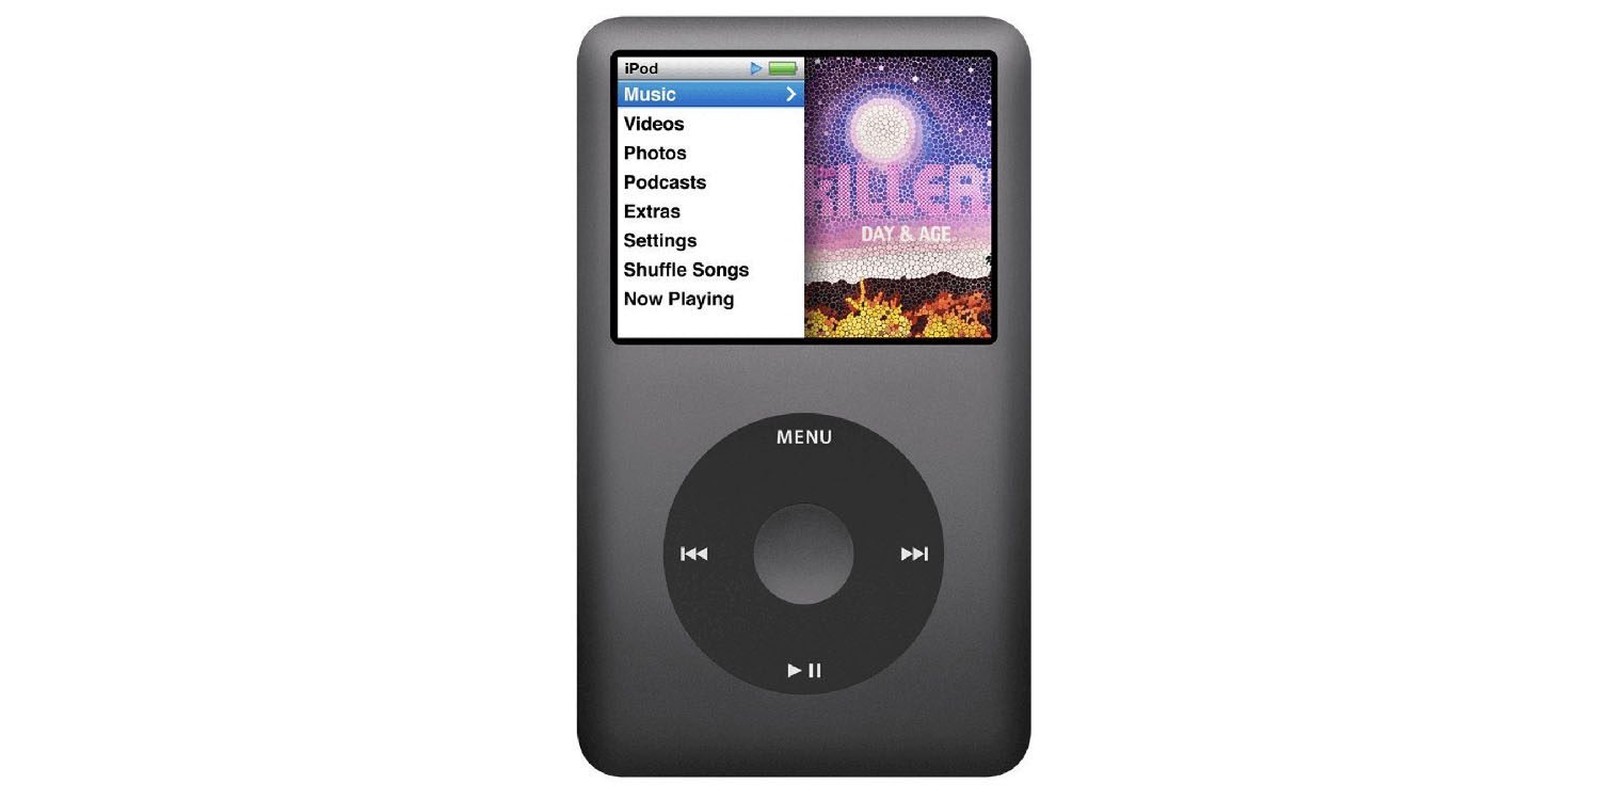 Tung co mot chiec iPod bi mat ma Steve Jobs khong he biet-Hinh-8